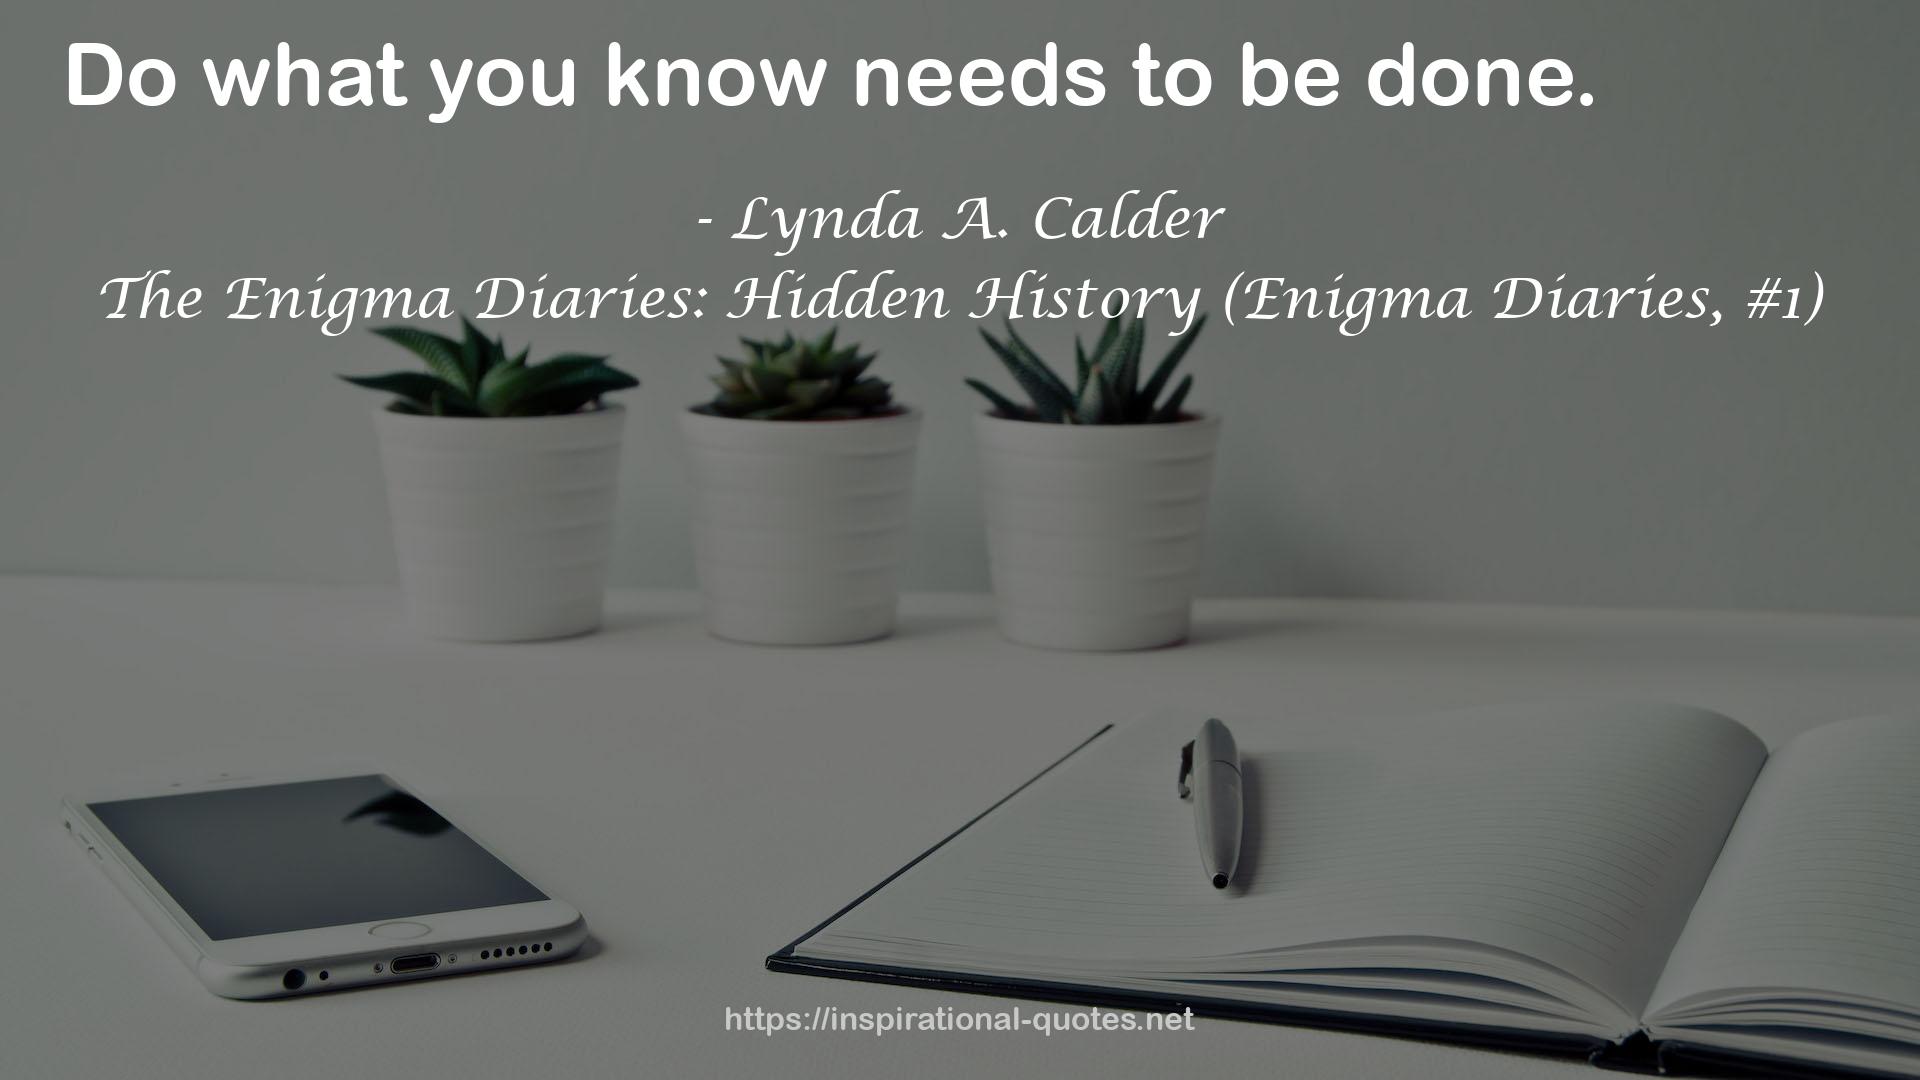 Lynda A. Calder QUOTES